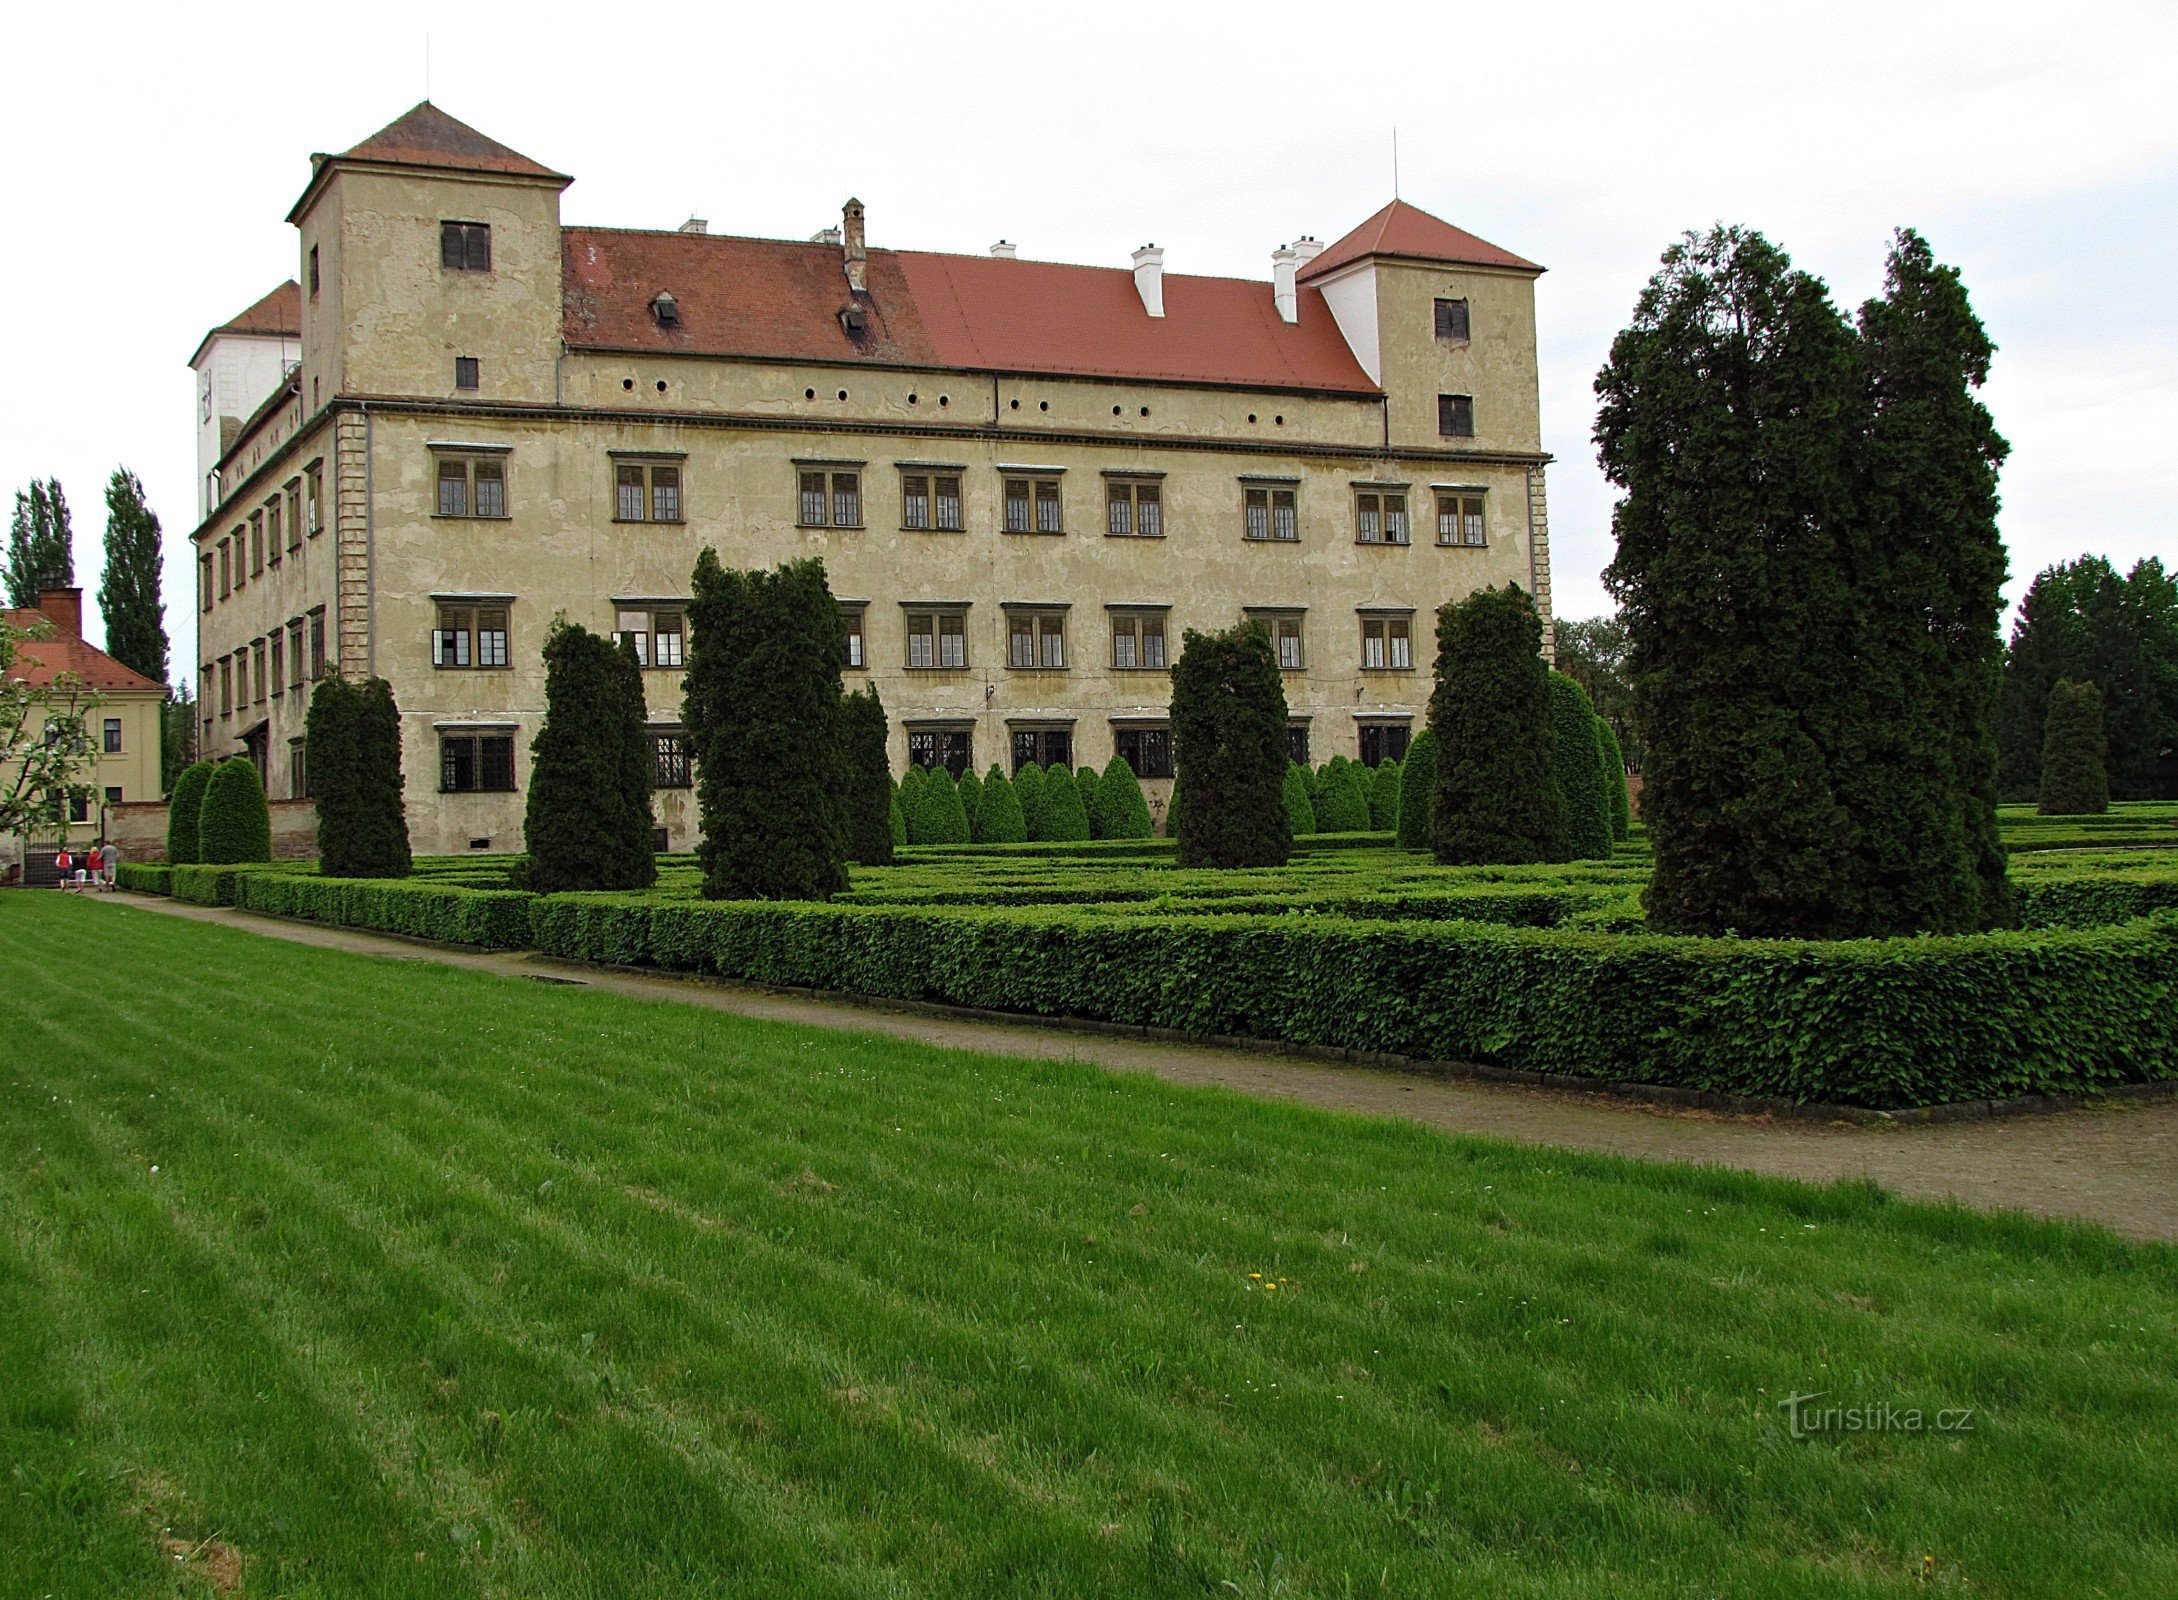 Khu vườn lâu đài thời Phục hưng ở Bučovice